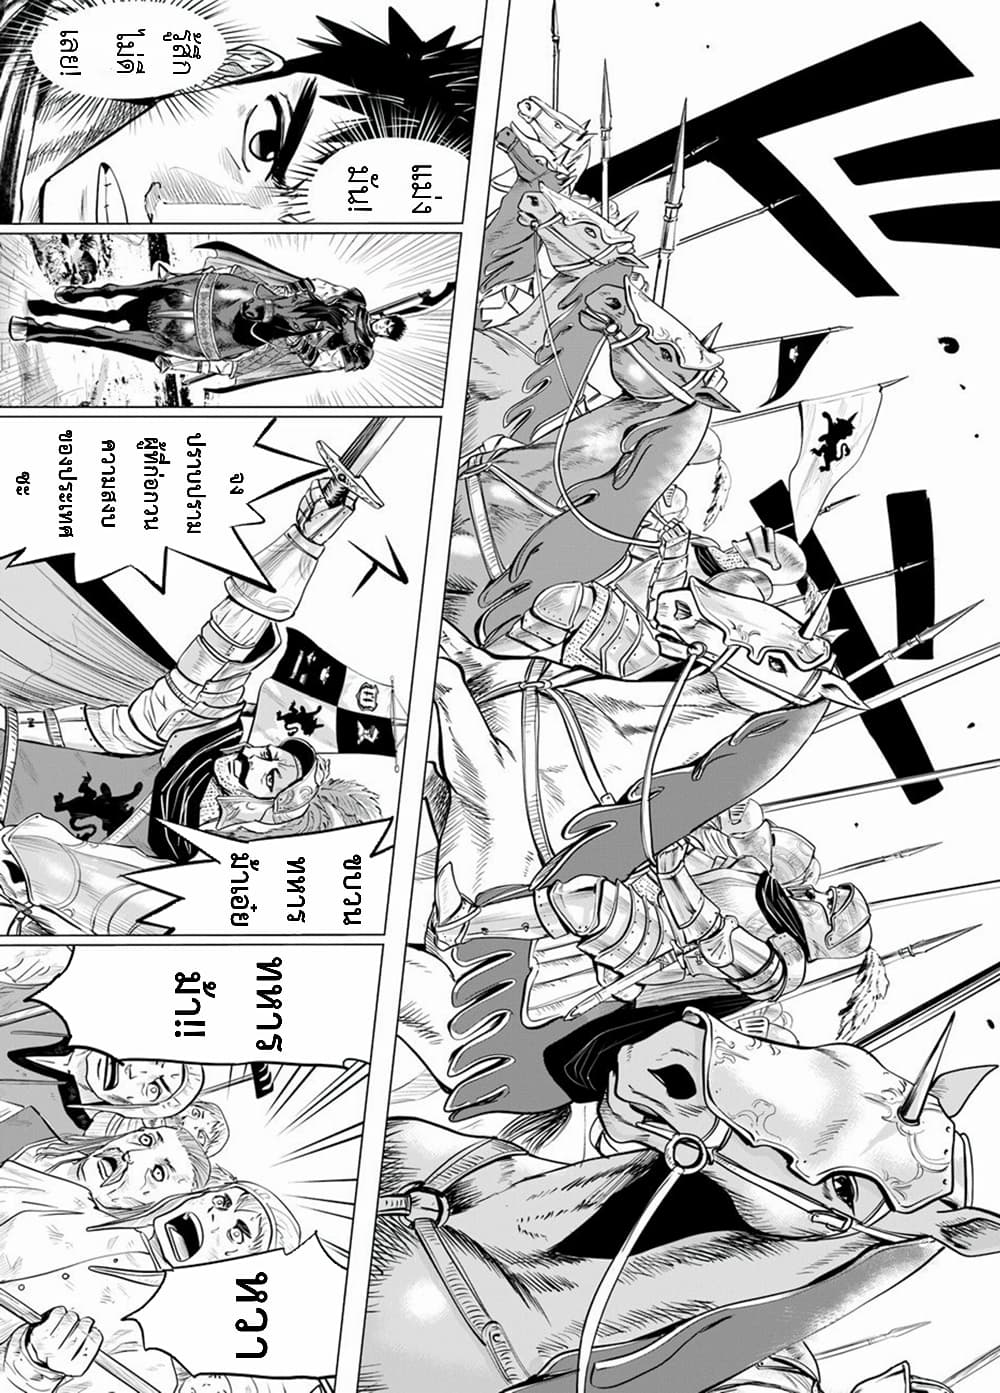 Oukoku e Tsuzuku Michi dorei Kenshi no Nariagari Eiyutan (Haaremu Raifu) - Road to the Kingdom Slave Swordsman the Rise of Heroes - Harem Life 11.2-11.2